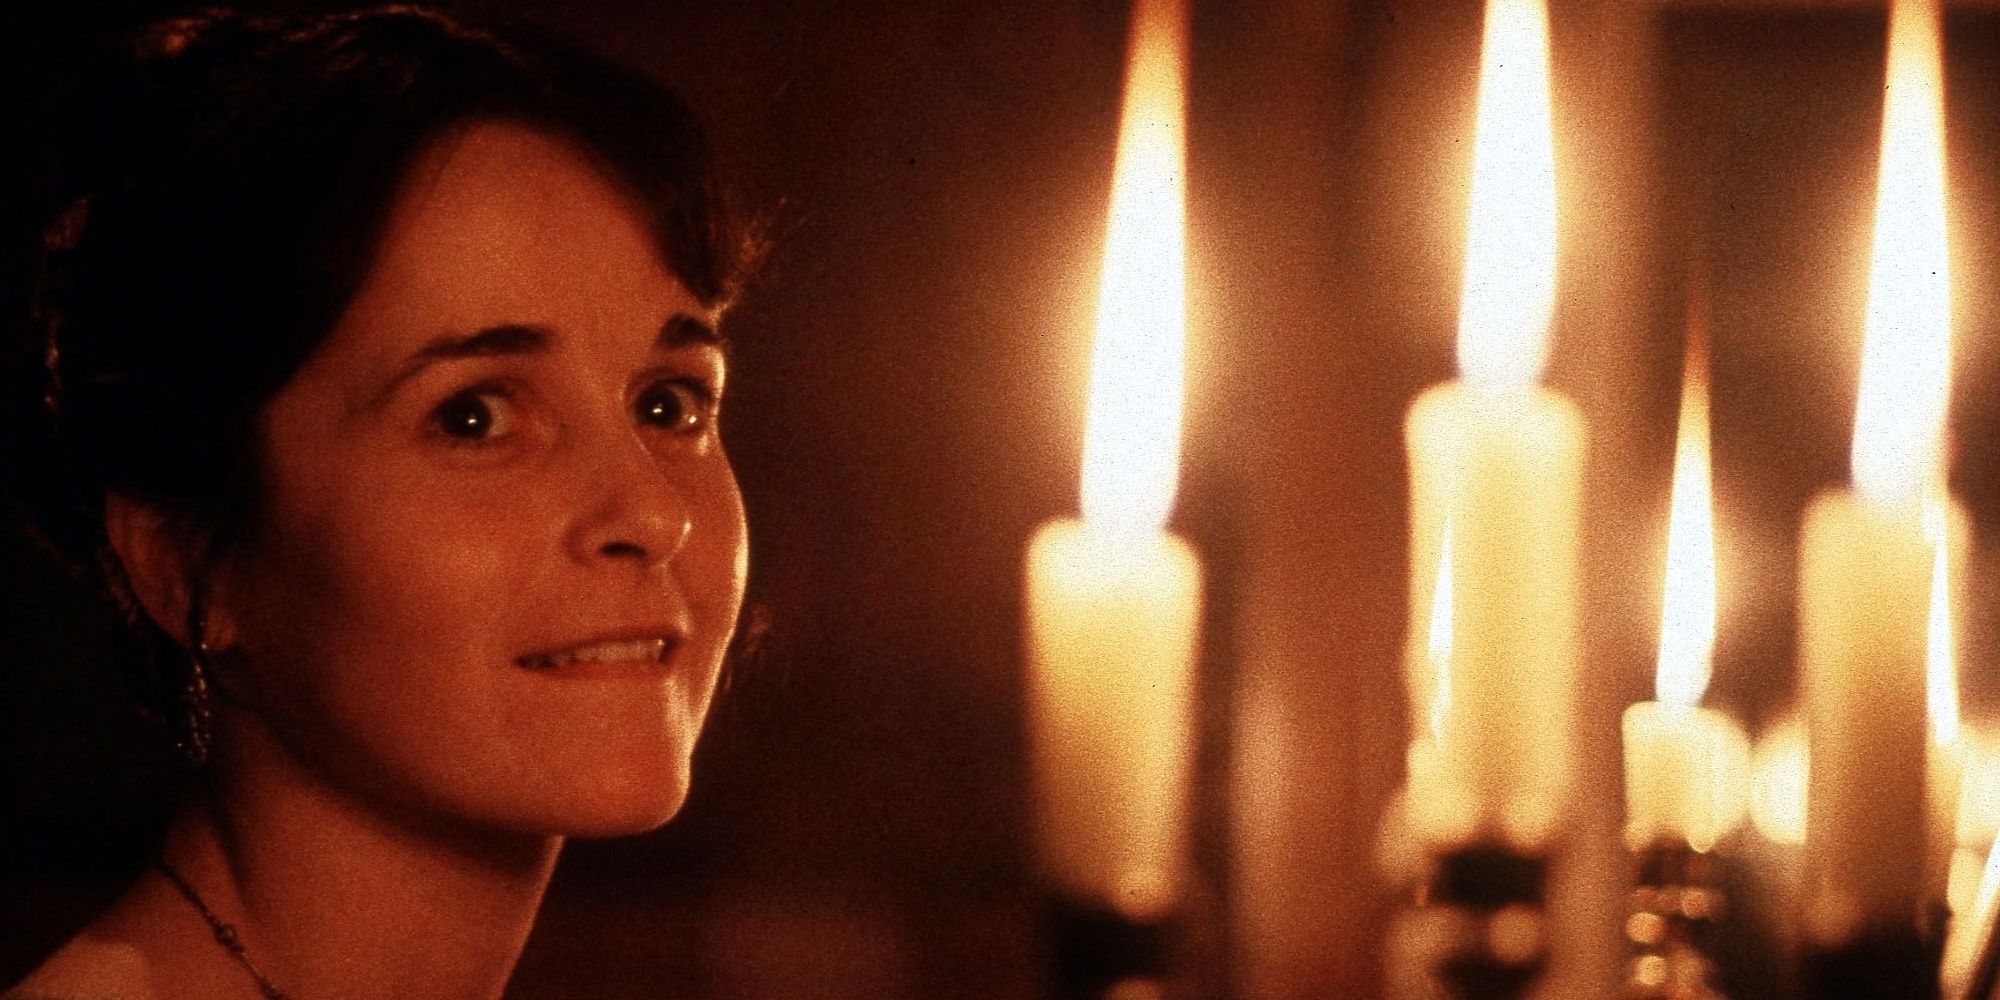 Jane Austens Best Heroines In Movies & TV Ranked